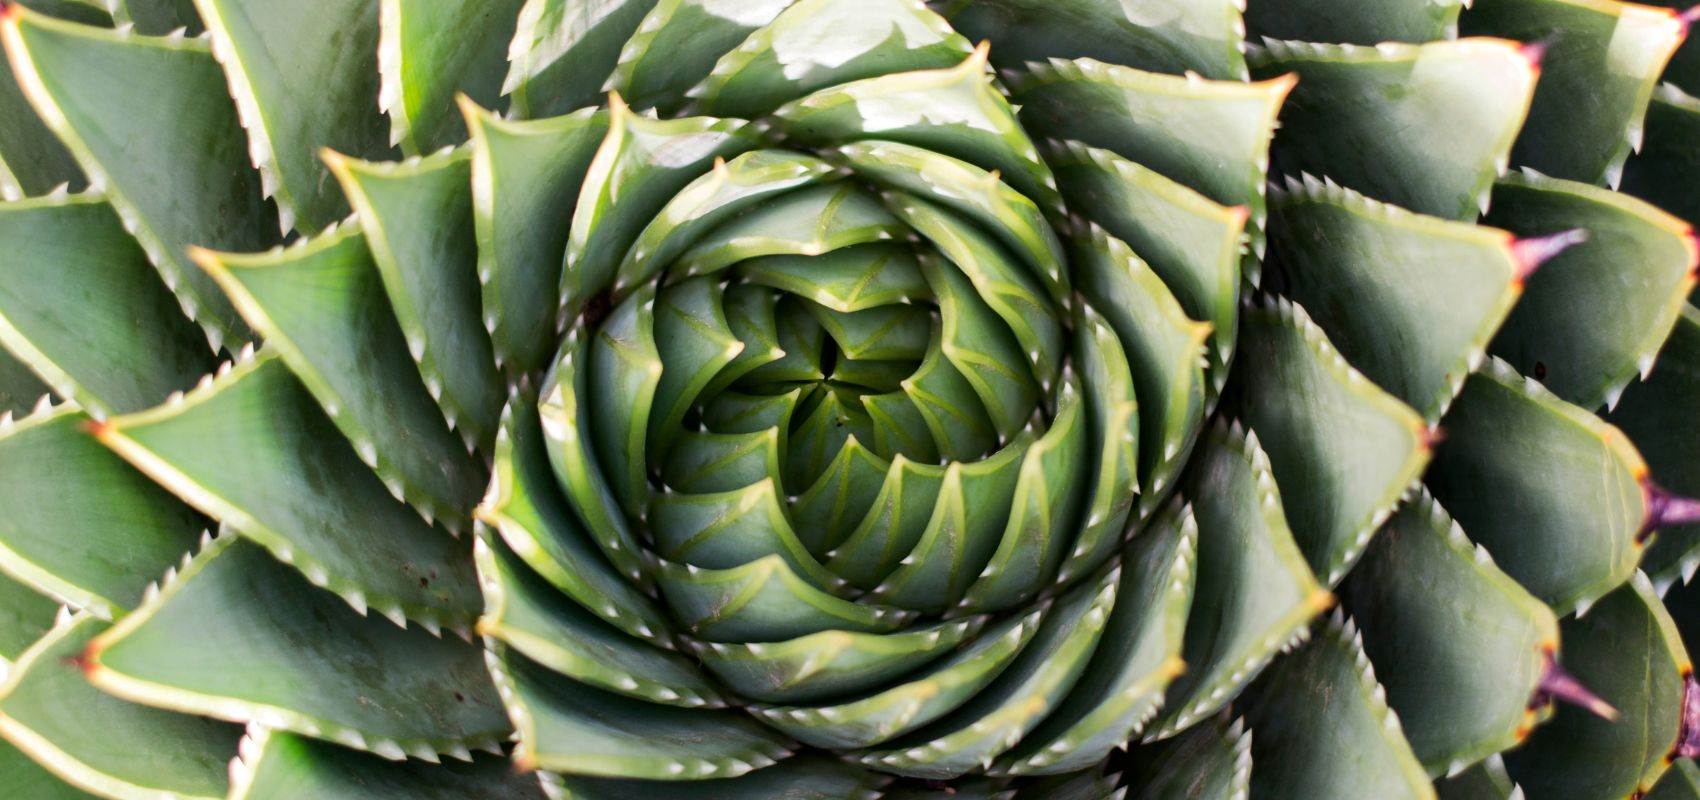 Grüne Pflanze, wo die Blätter zu einer Spirale geformt sind